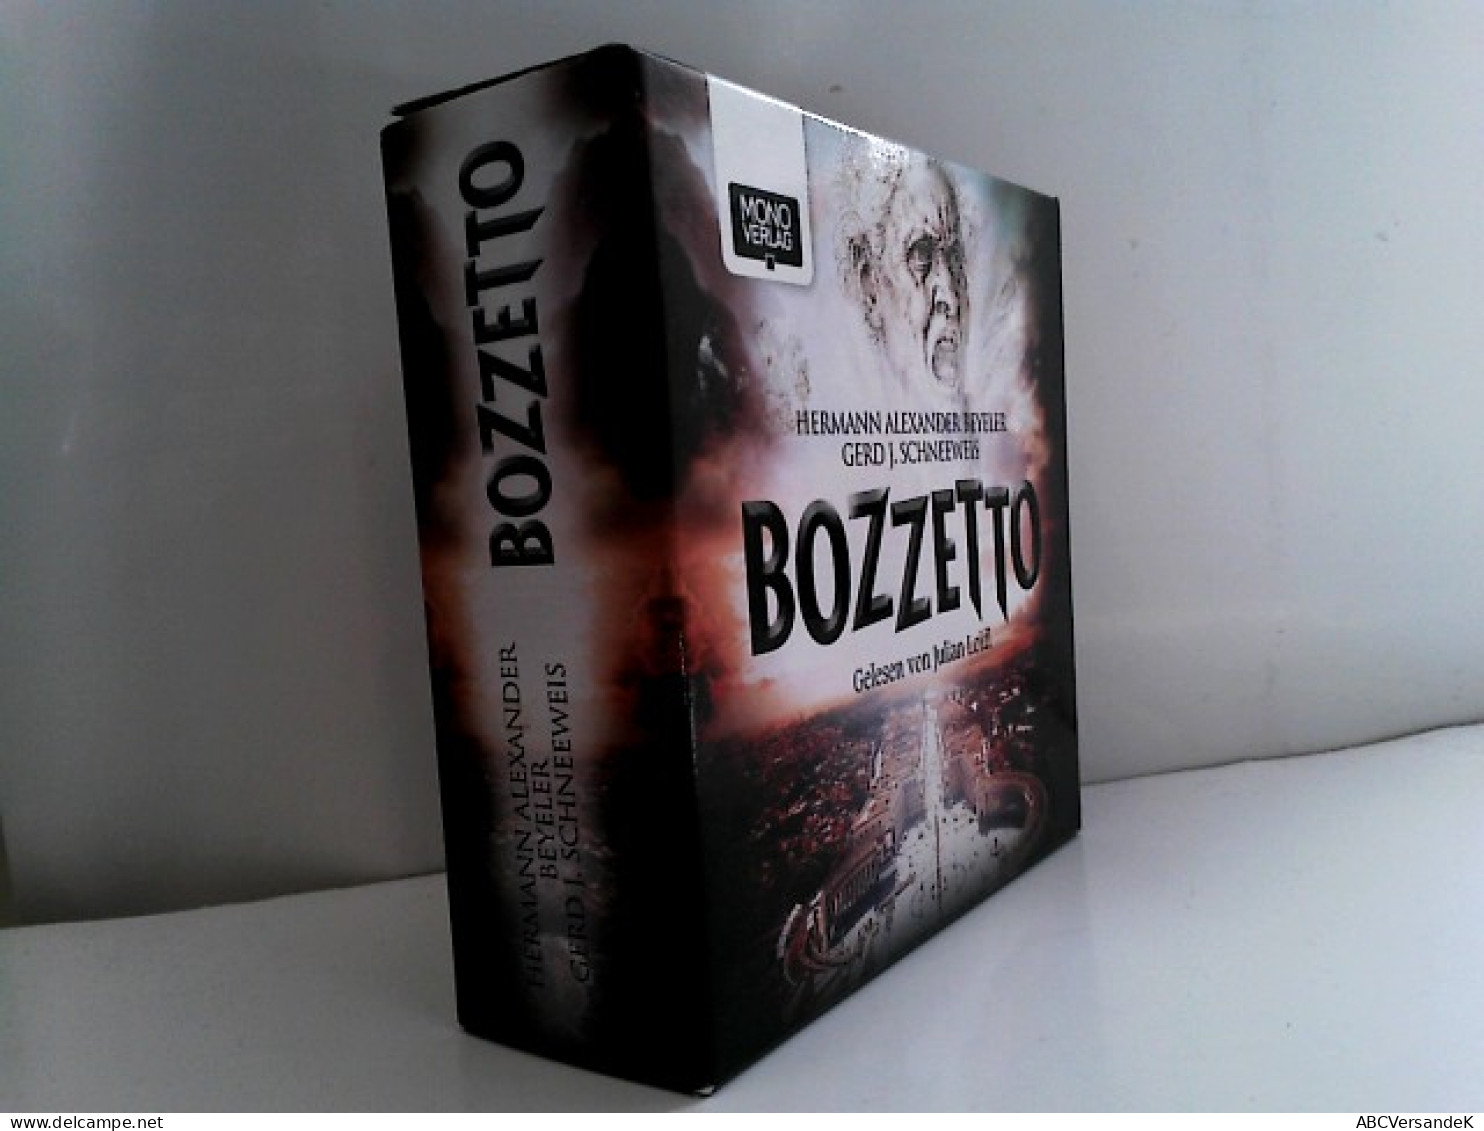 Bozzetto - CDs